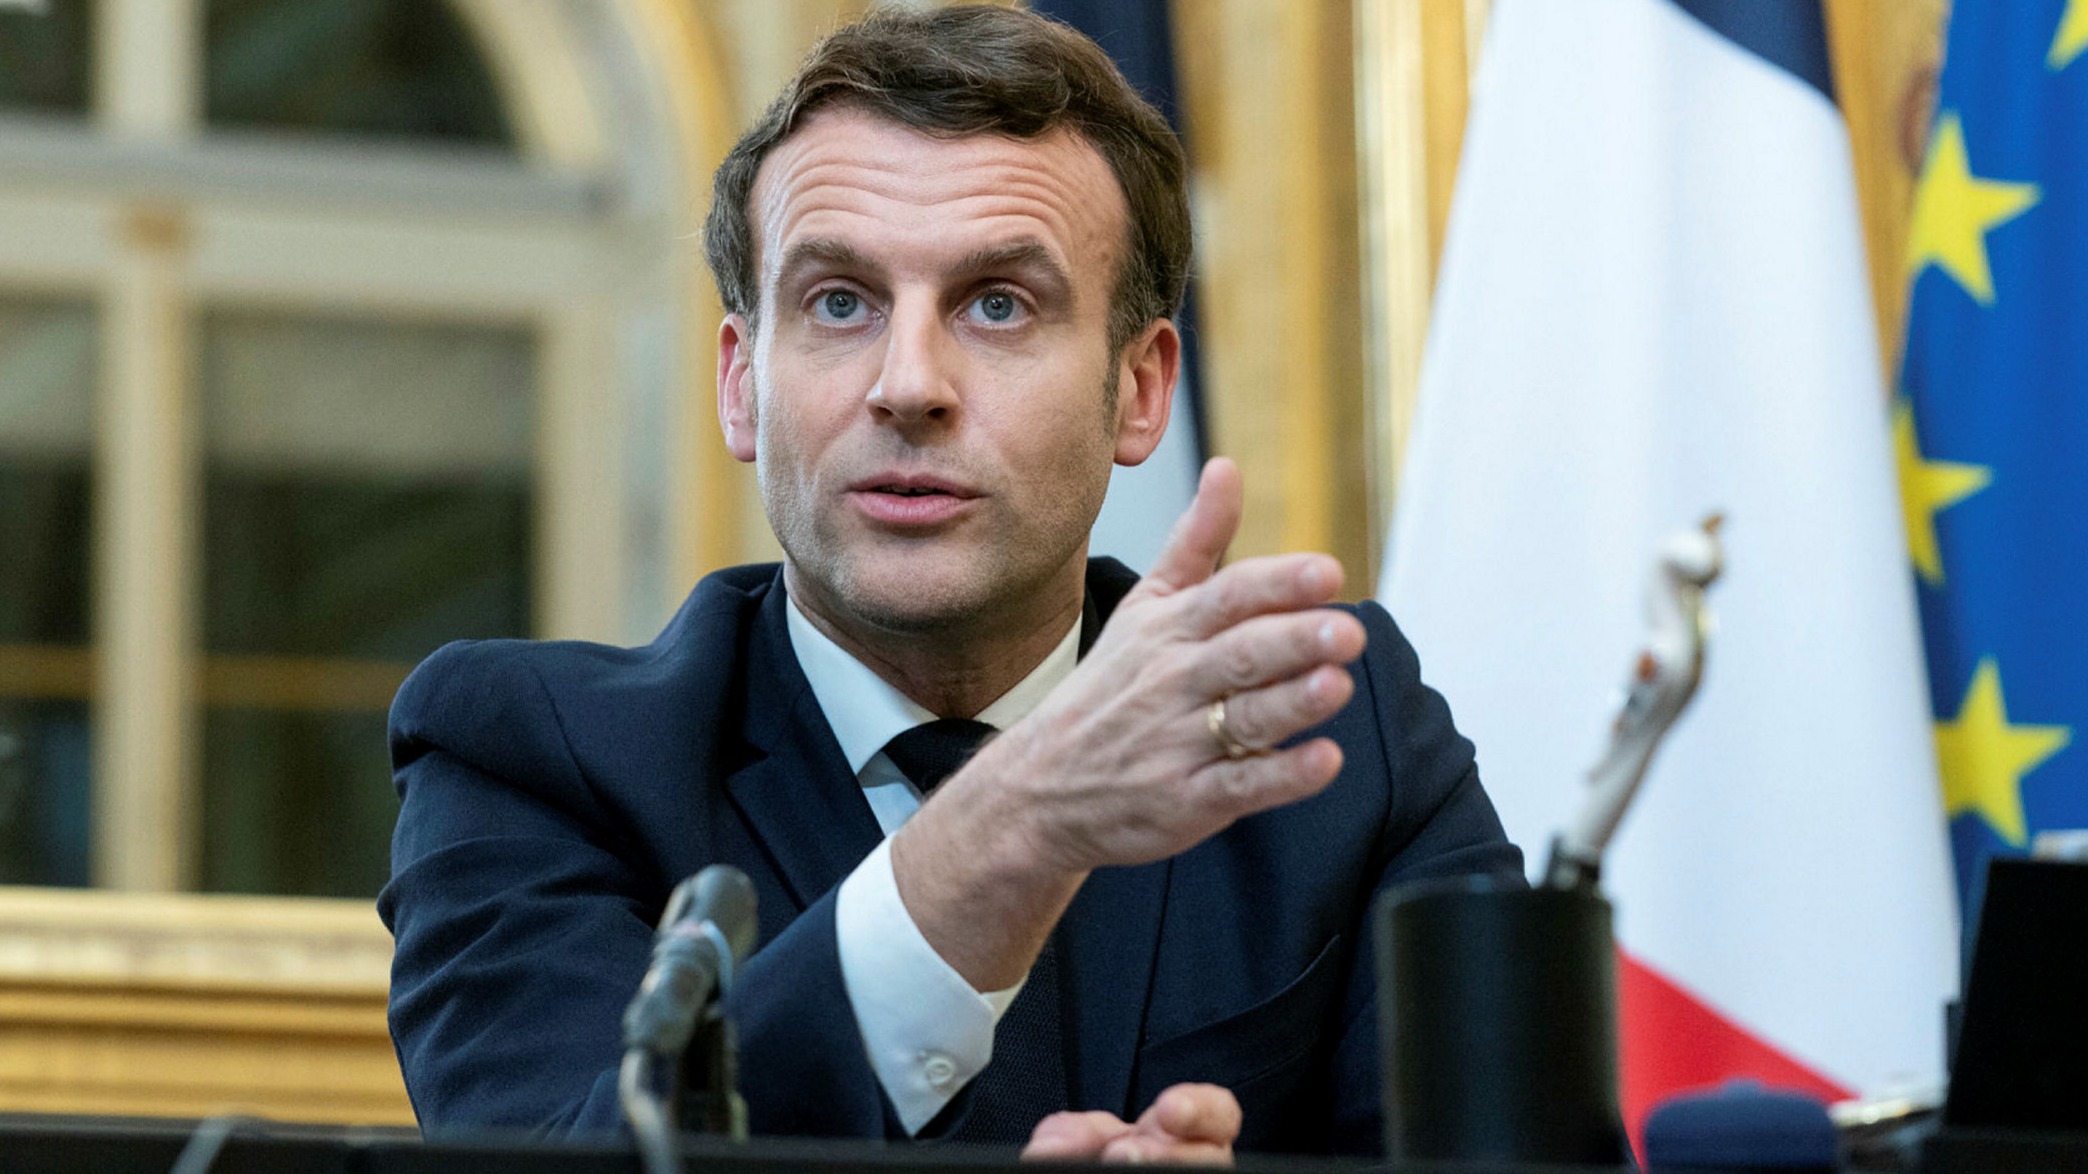 Sondaggi politici: Macron aumenta il vantaggio su Marine Le Pen